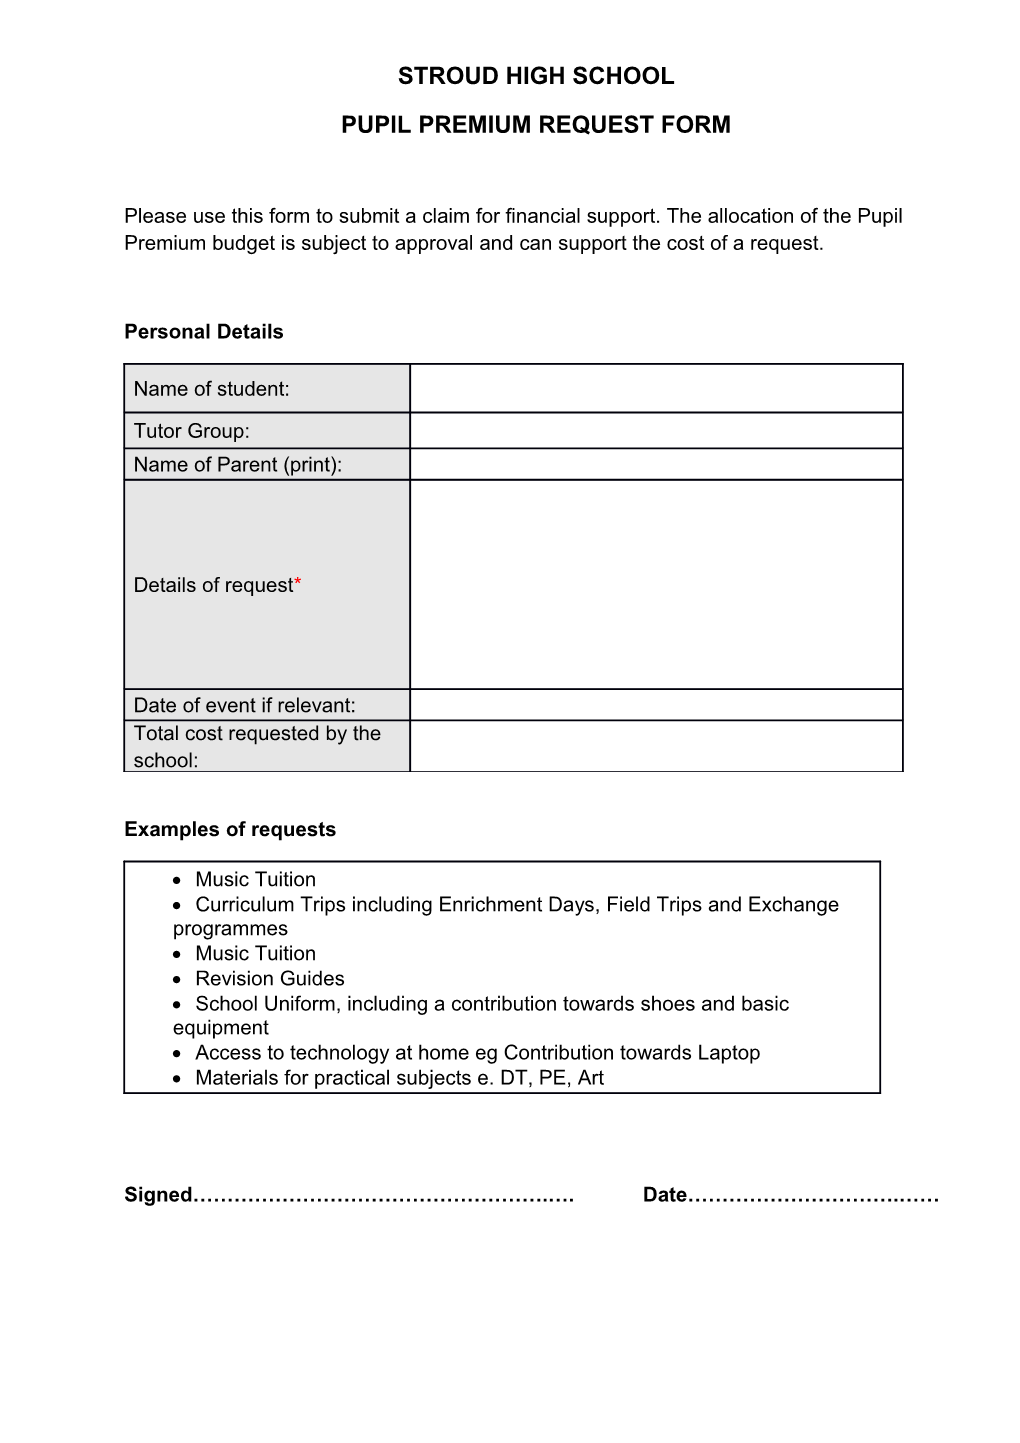 Pupil Premium Request Form